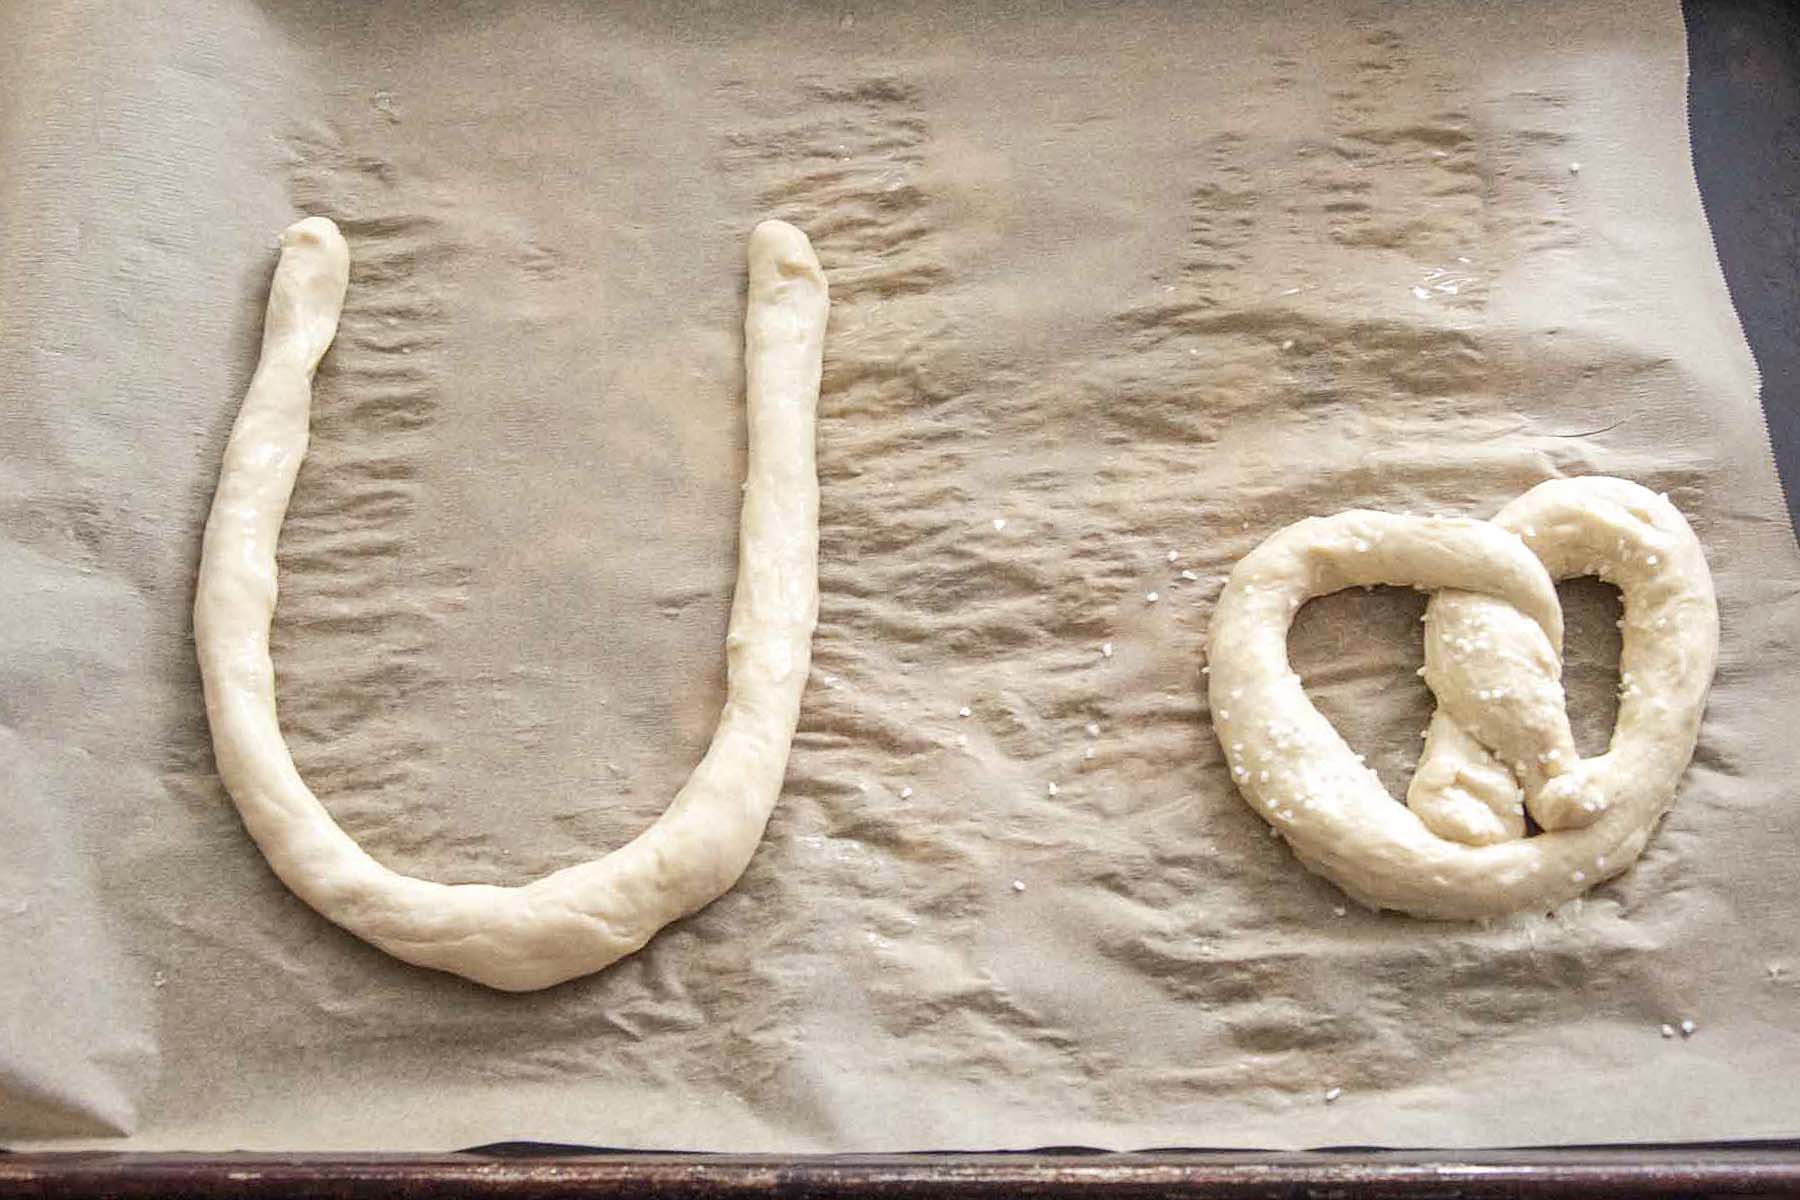 How to shape a soft pretzel: the U-shape